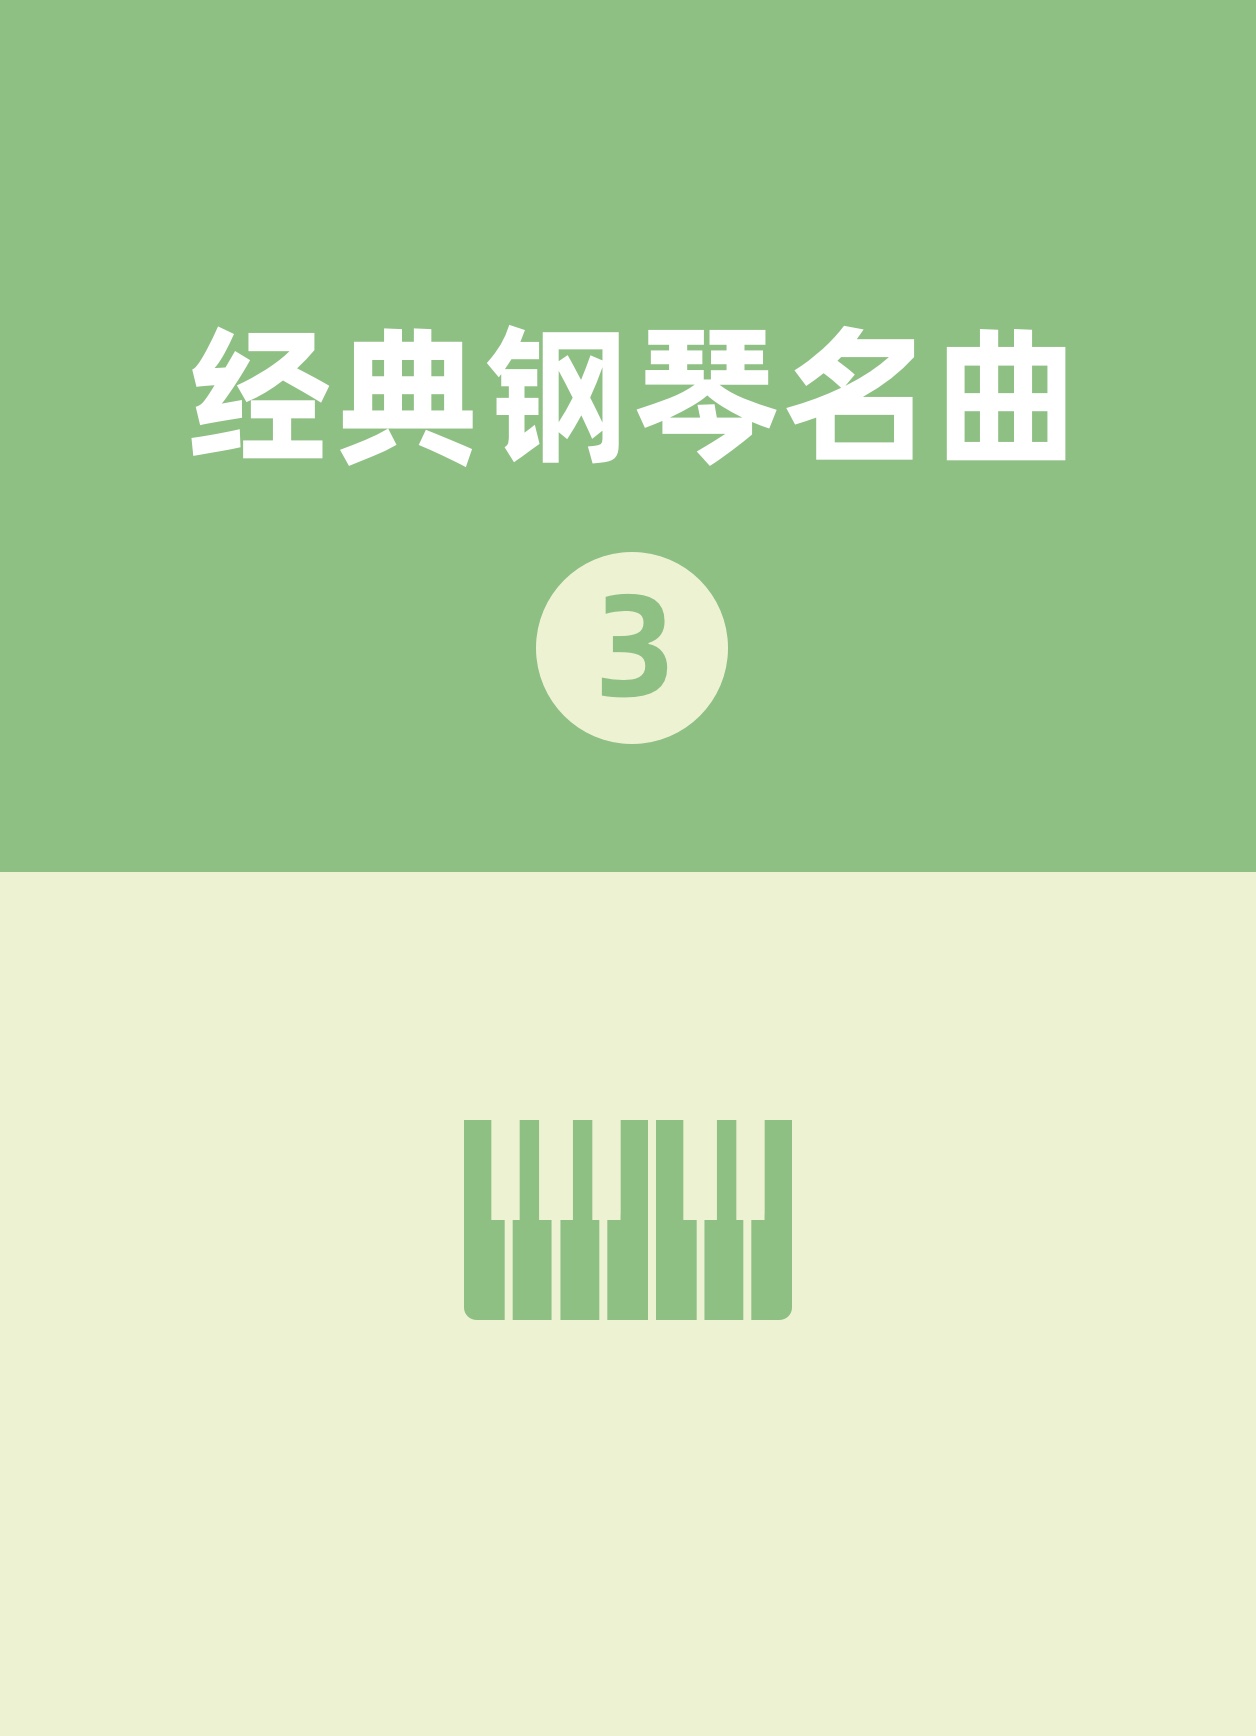 04练习曲钢琴简谱 数字双手